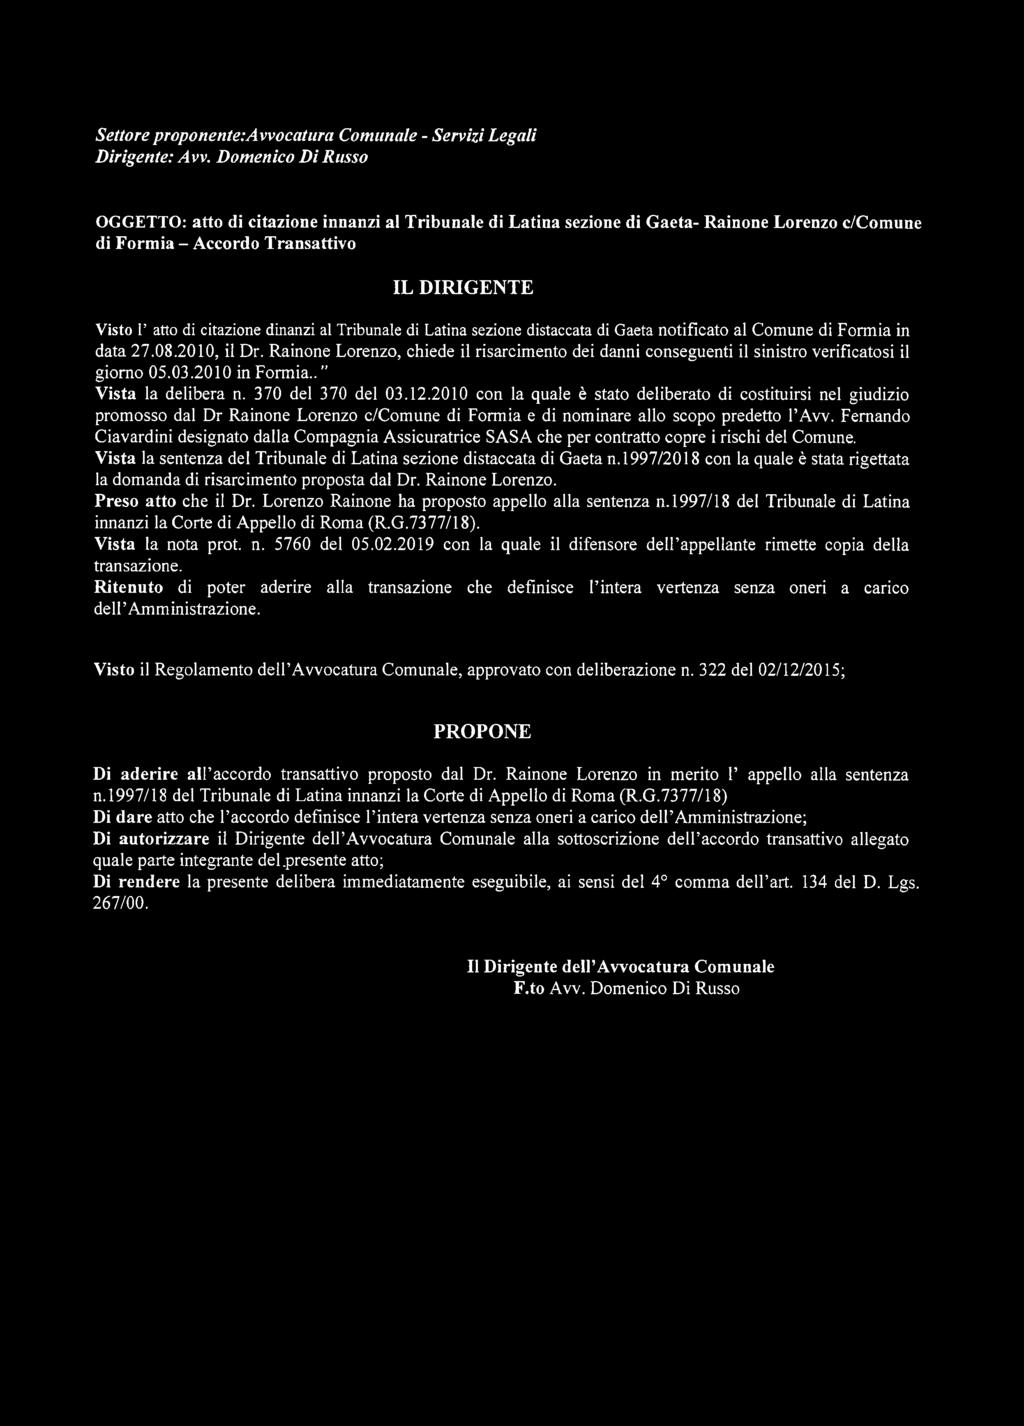 2010 con la quale è stato deliberato di costituirsi nel giudizio promosso dal Dr Rainone Lorenzo c/comune di Formia e di nominare allo scopo predetto l Avv.